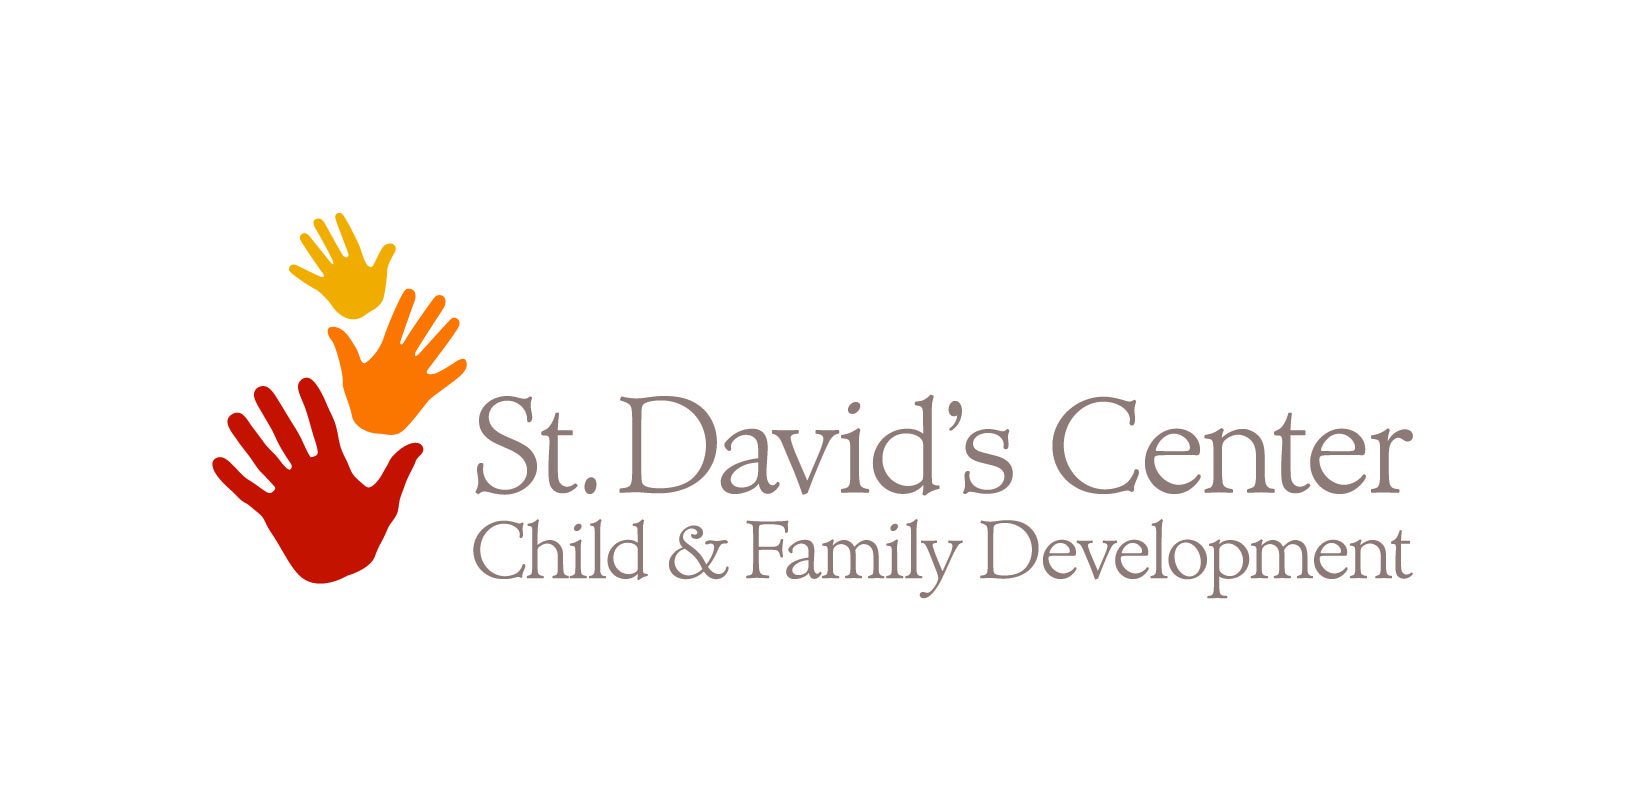 Centro St. David para el desarrollo infantil y familiar